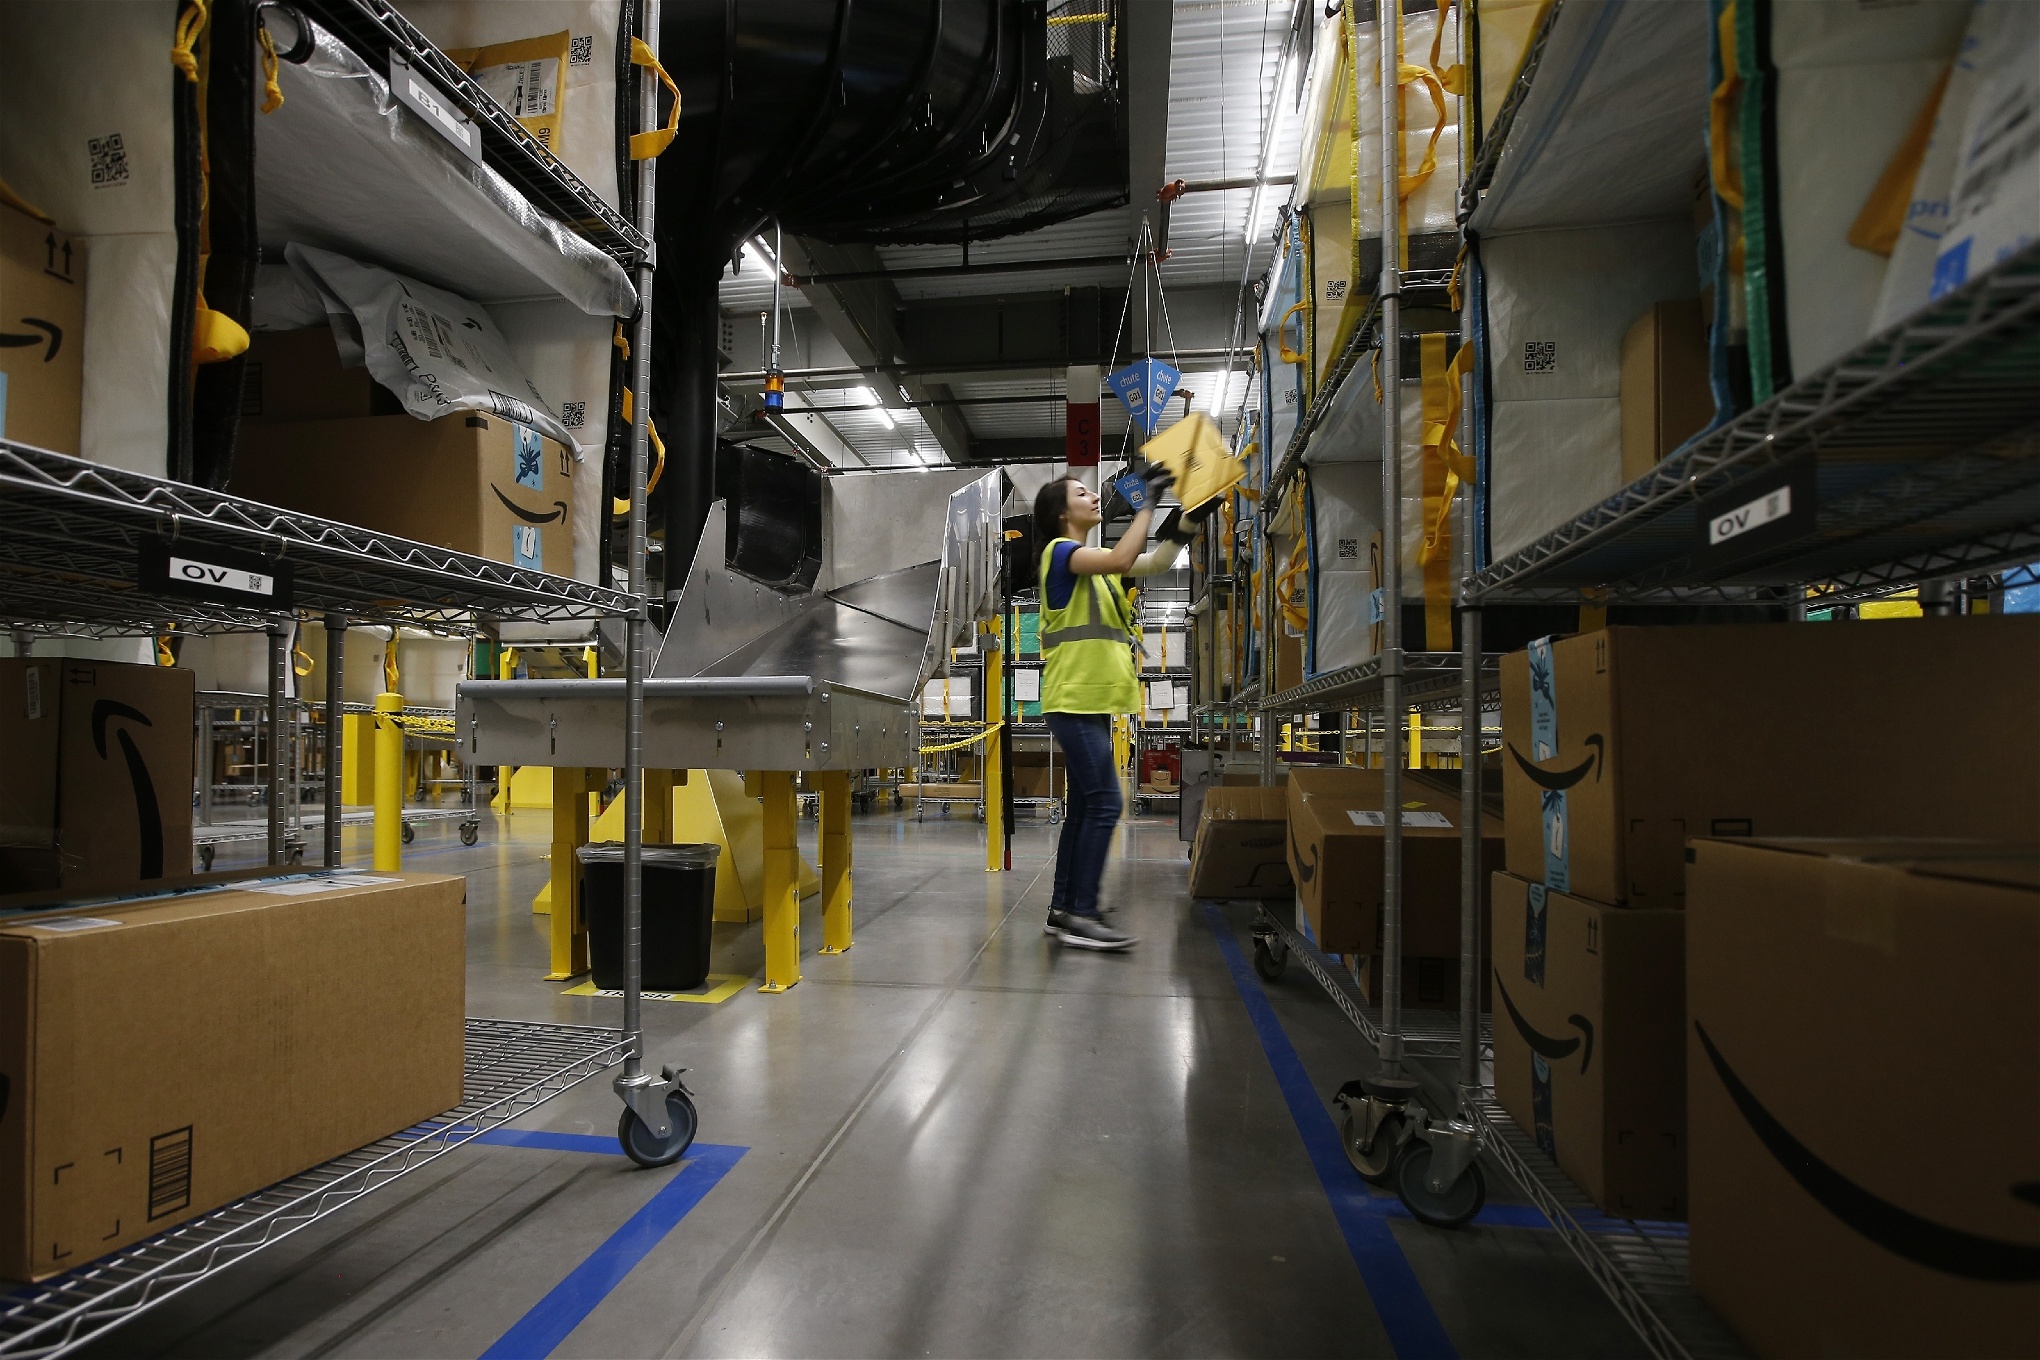 Foto: Ross D. Franklin/TTPå Amazons lager har automatiseringen lett till att arbetet blivit mer rutinartat.